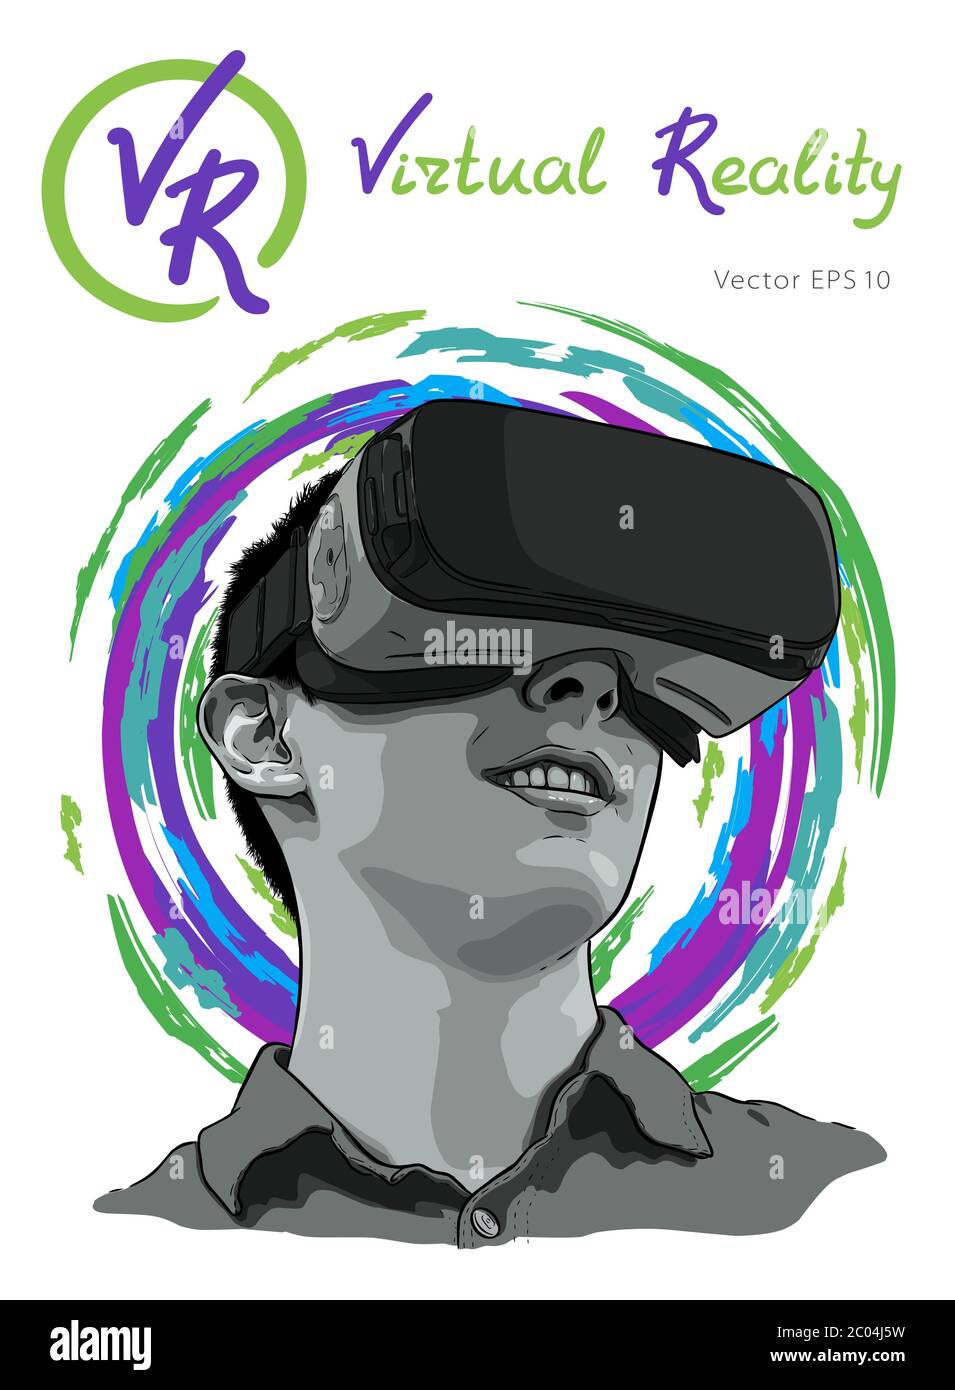 Mann mit Virtual reality Brillen. Hand gezeichnet Vektor-illustration, Skizze Stock Vektor